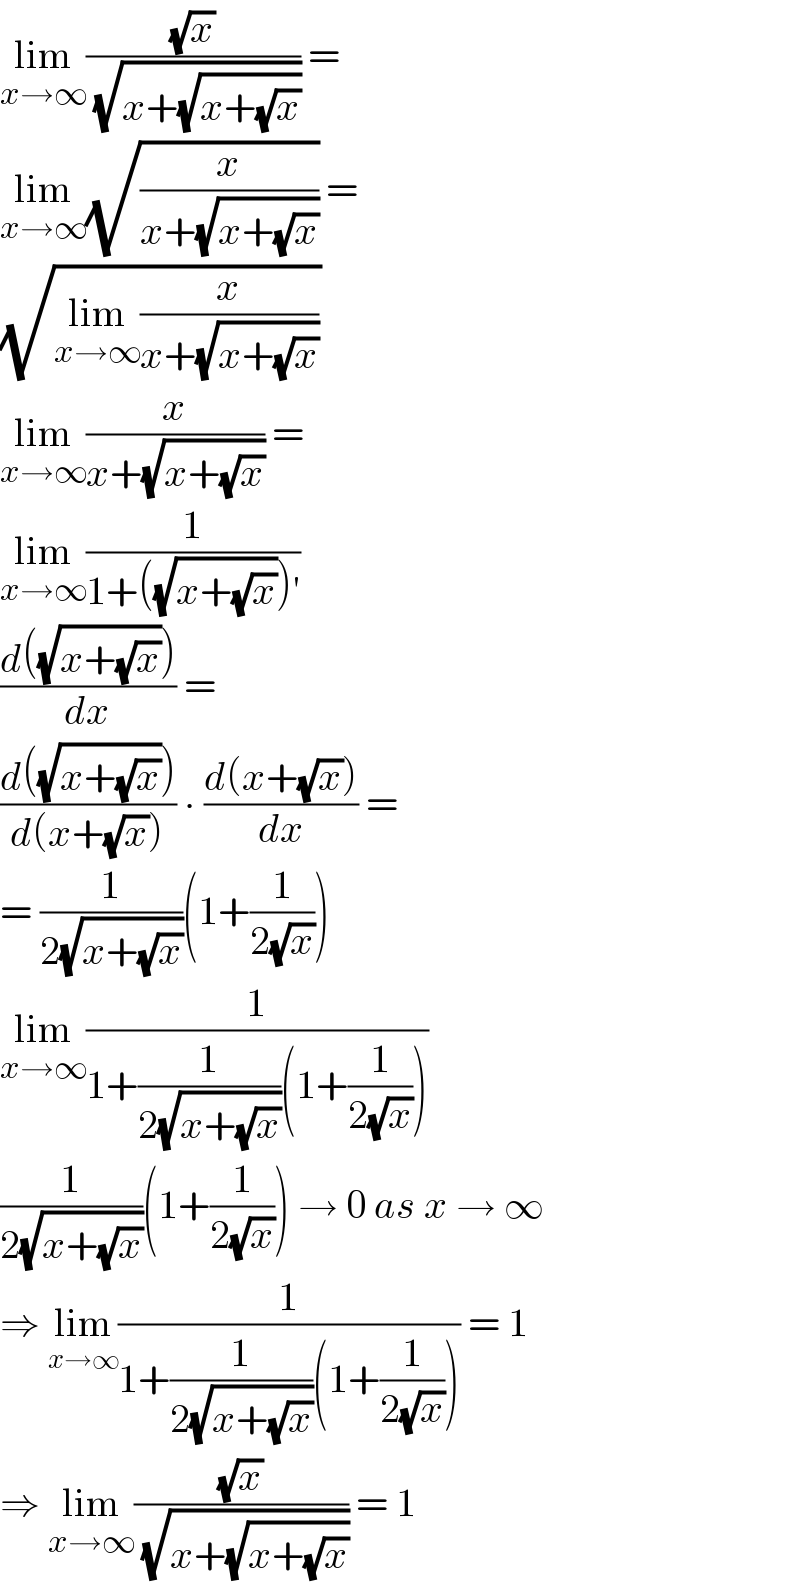 lim_(x→∞) ((√x)/( (√(x+(√(x+(√x))))))) =  lim_(x→∞) (√(x/(x+(√(x+(√x)))))) =  (√(lim_(x→∞) (x/(x+(√(x+(√x)))))))  lim_(x→∞) (x/(x+(√(x+(√x))))) =  lim_(x→∞) (1/(1+((√(x+(√x))))′))  ((d((√(x+(√x)))))/dx) =  ((d((√(x+(√x)))))/(d(x+(√x)))) ∙ ((d(x+(√x)))/dx) =  = (1/(2(√(x+(√x)))))(1+(1/(2(√x))))  lim_(x→∞) (1/(1+(1/(2(√(x+(√x)))))(1+(1/(2(√x))))))  (1/(2(√(x+(√x)))))(1+(1/(2(√x)))) → 0 as x → ∞  ⇒ lim_(x→∞) (1/(1+(1/(2(√(x+(√x)))))(1+(1/(2(√x)))))) = 1  ⇒ lim_(x→∞) ((√x)/( (√(x+(√(x+(√x))))))) = 1  